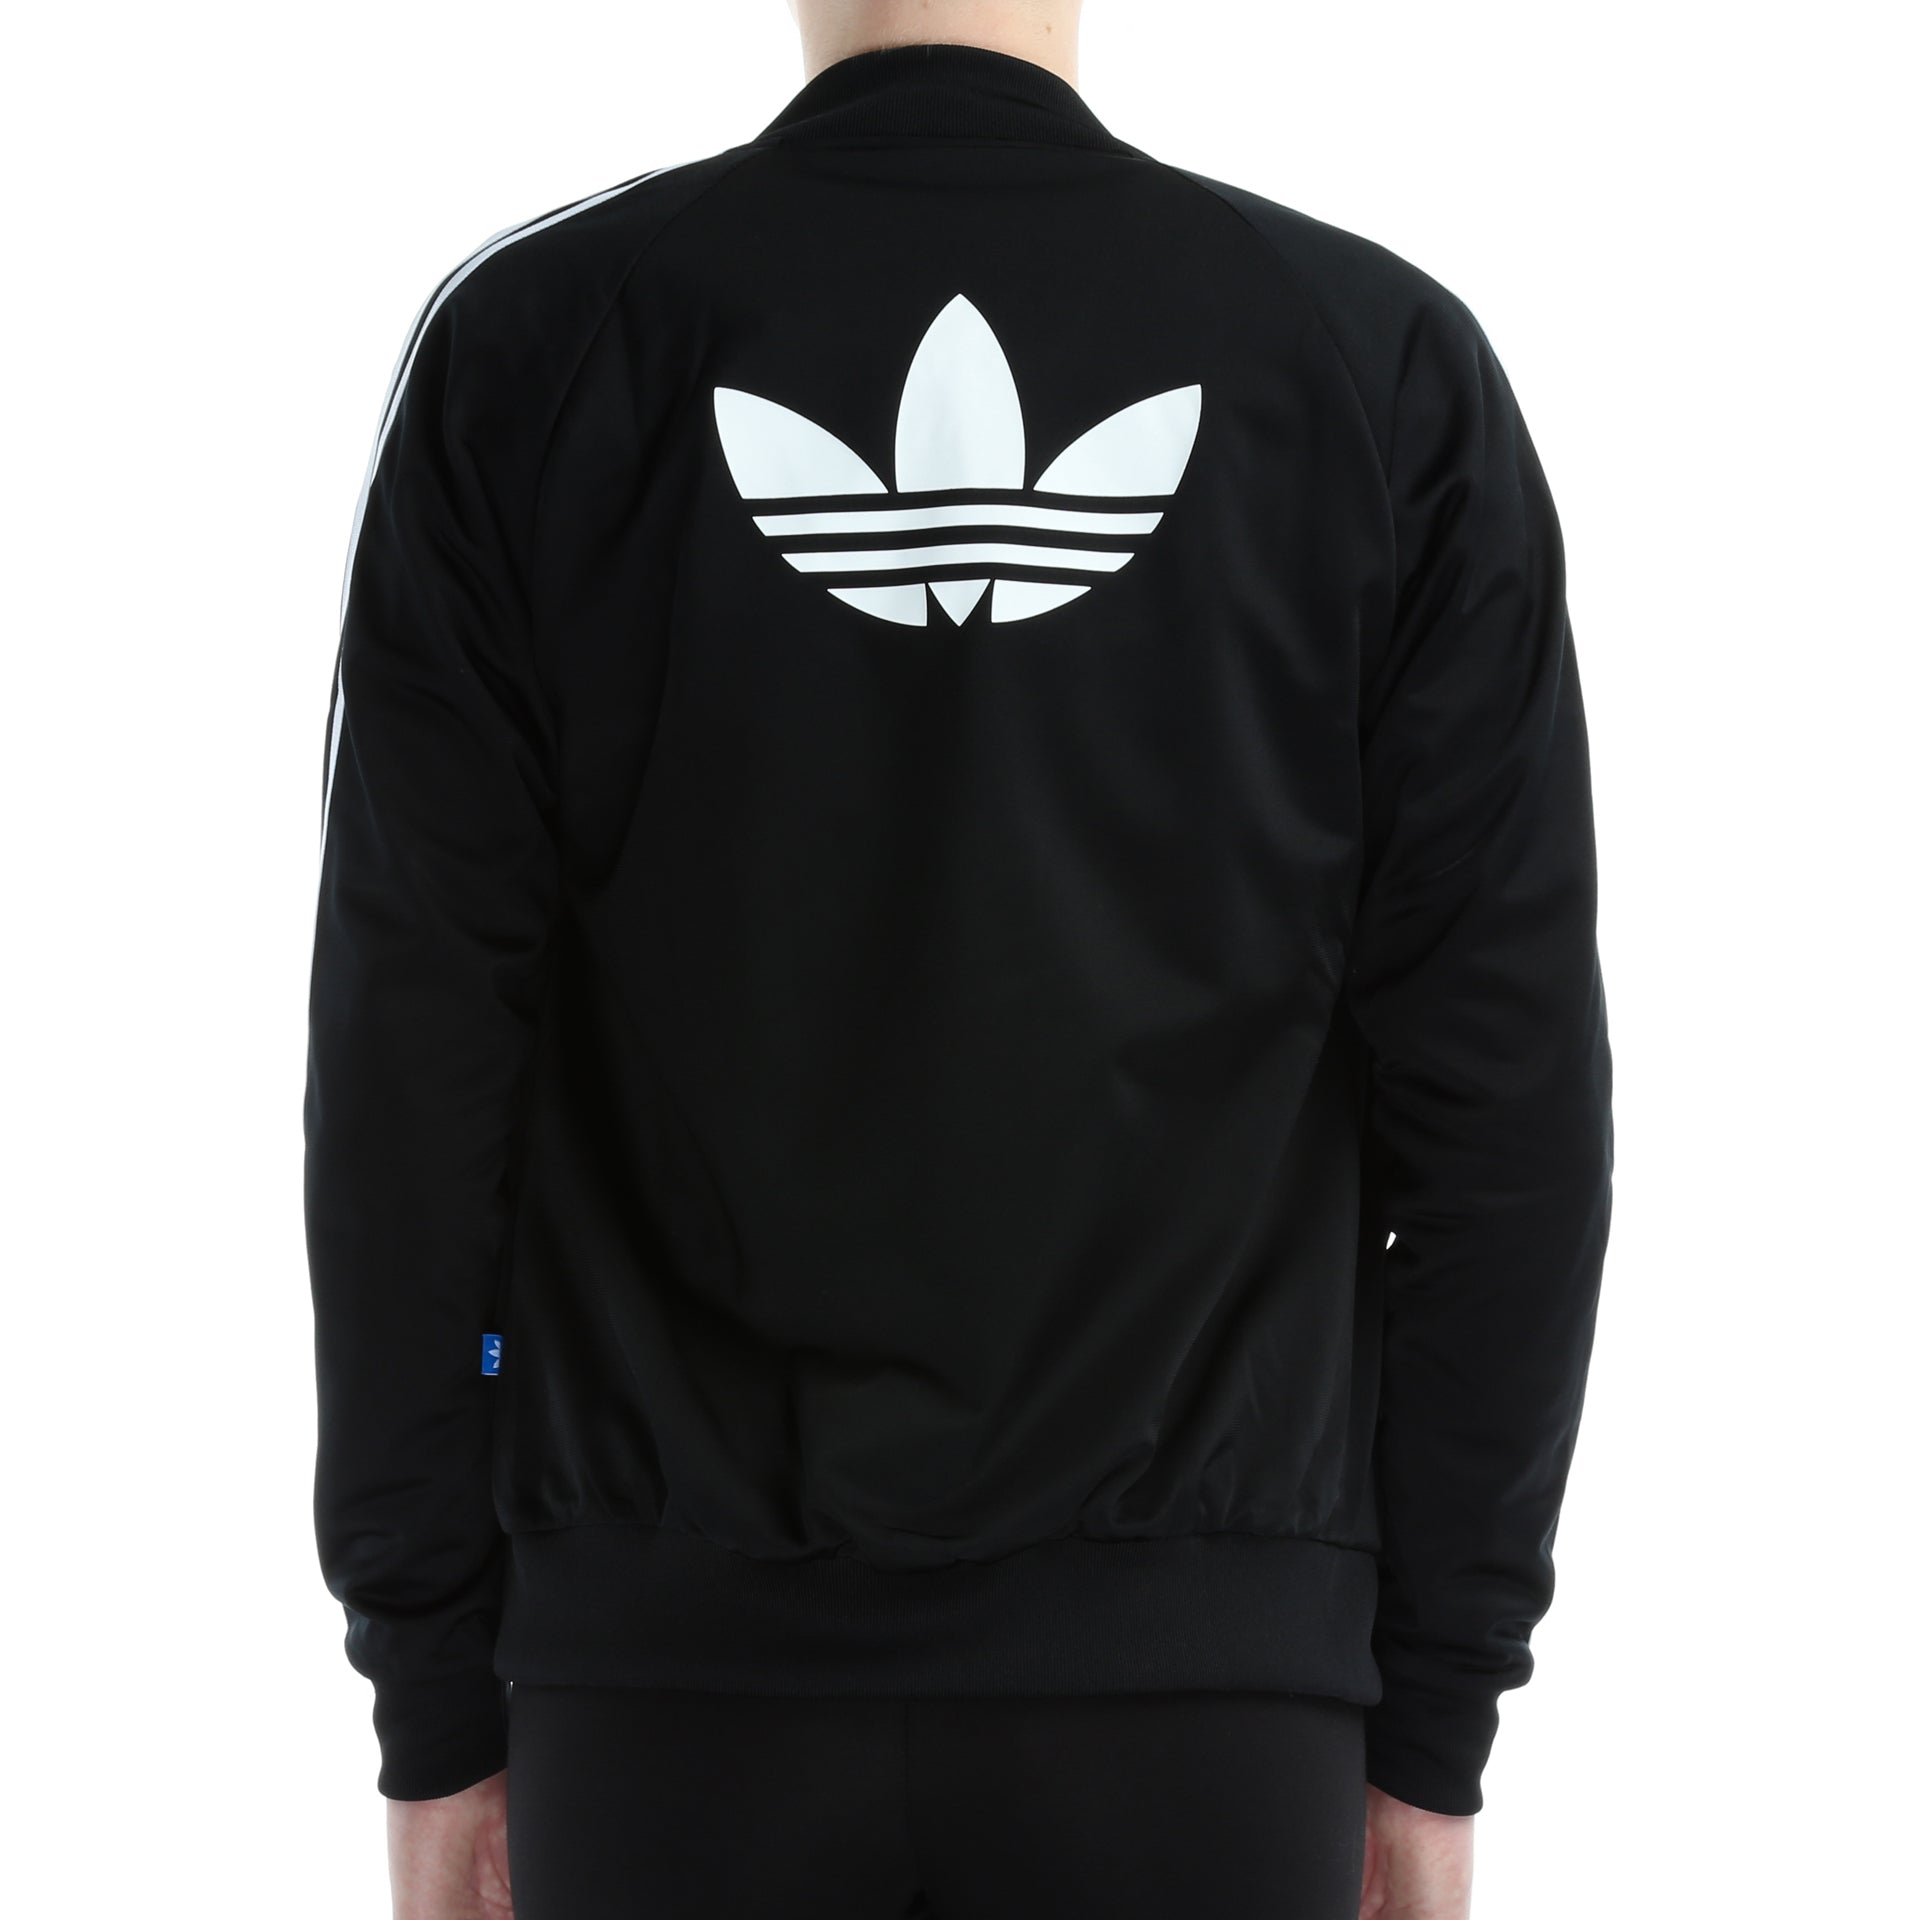 adidas jacket with logo on the back